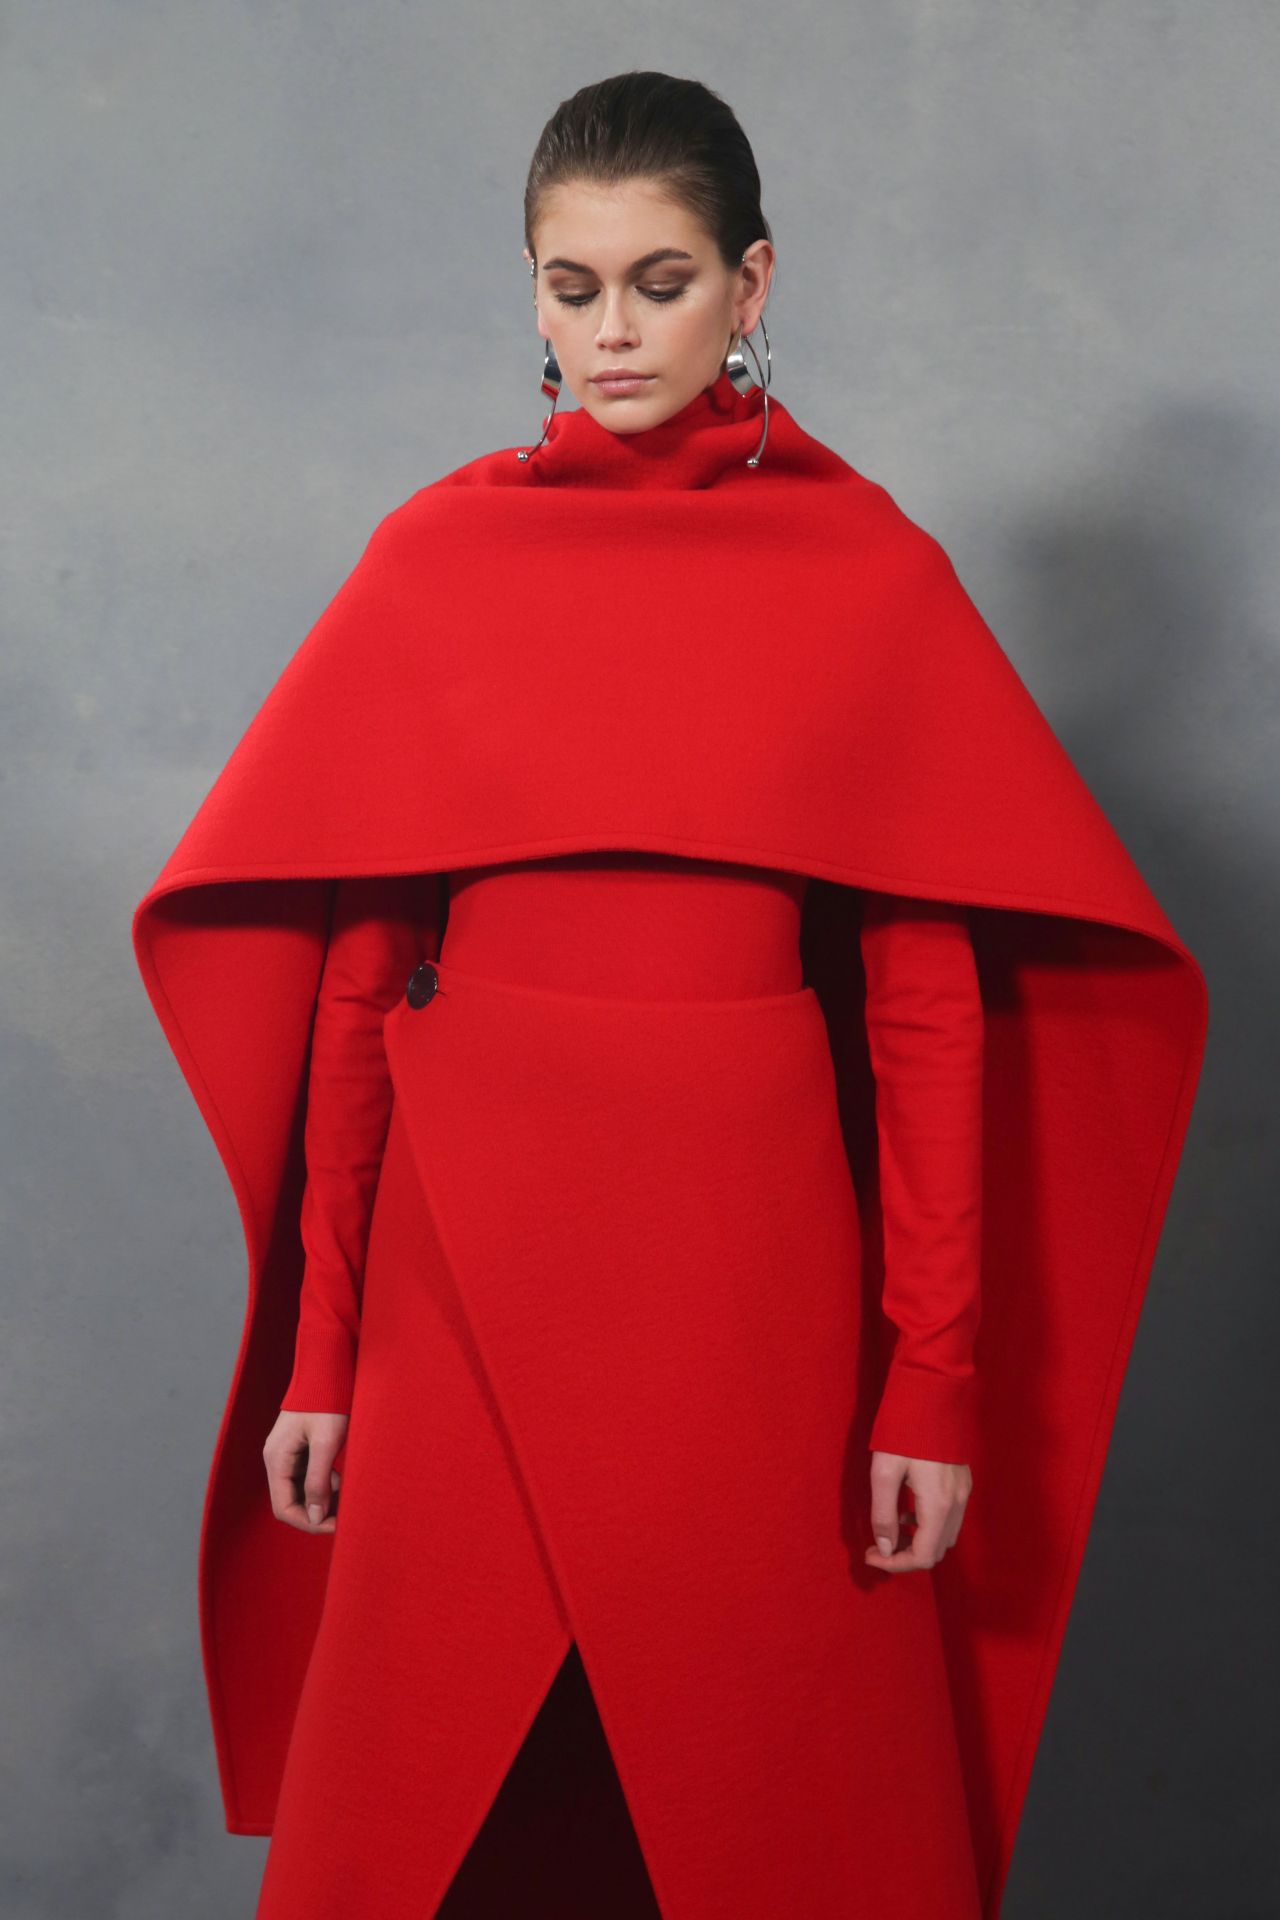 Kaia Gerber - Walks Givenchy Show Fall Winter 2020 at Paris Fashion ...